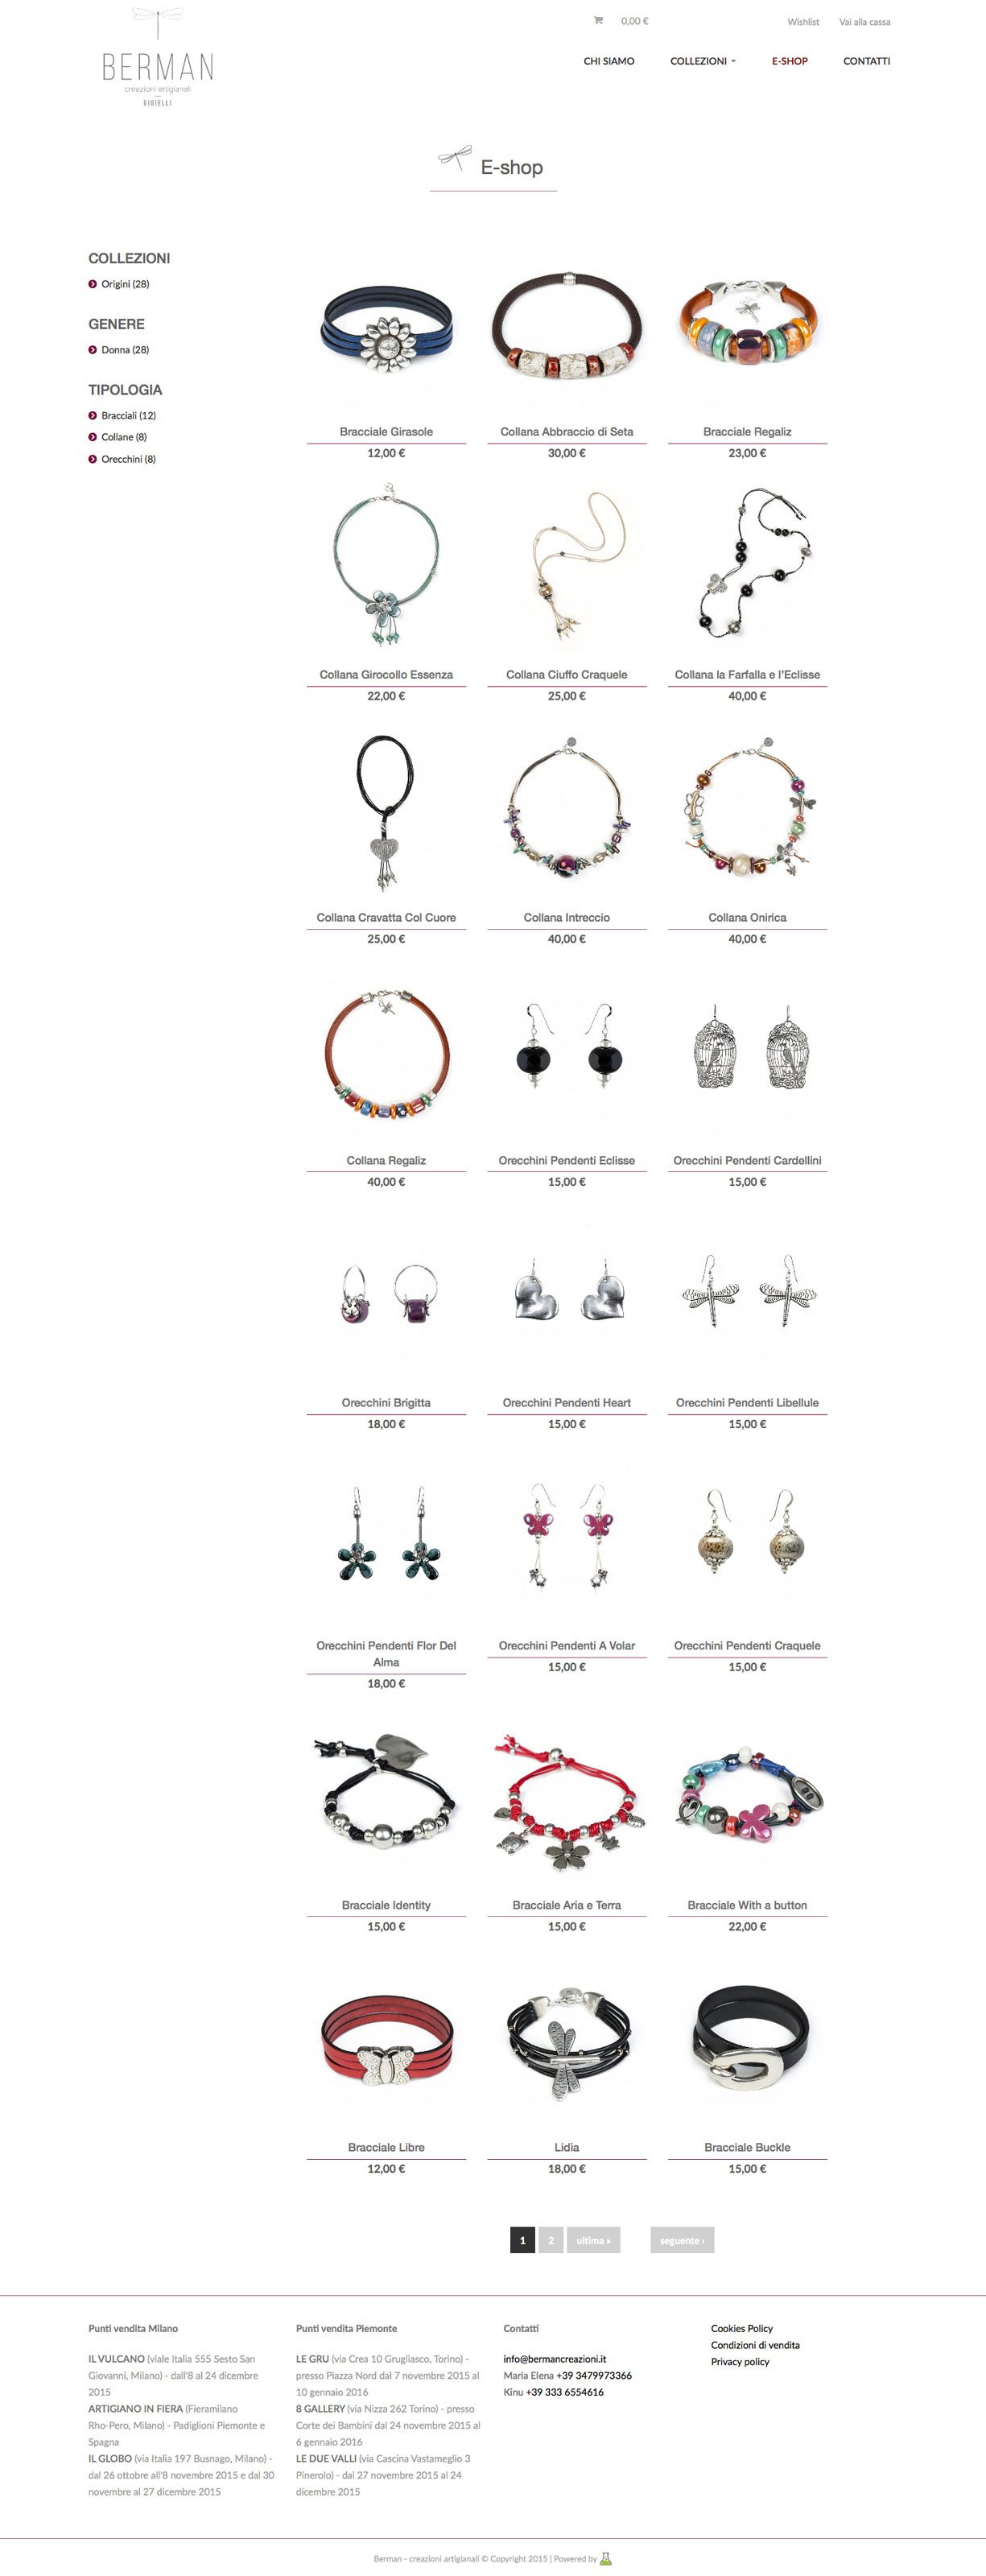 pagina eCommerce gioielli per berman creazioni artigianali gioielli - archibuzz